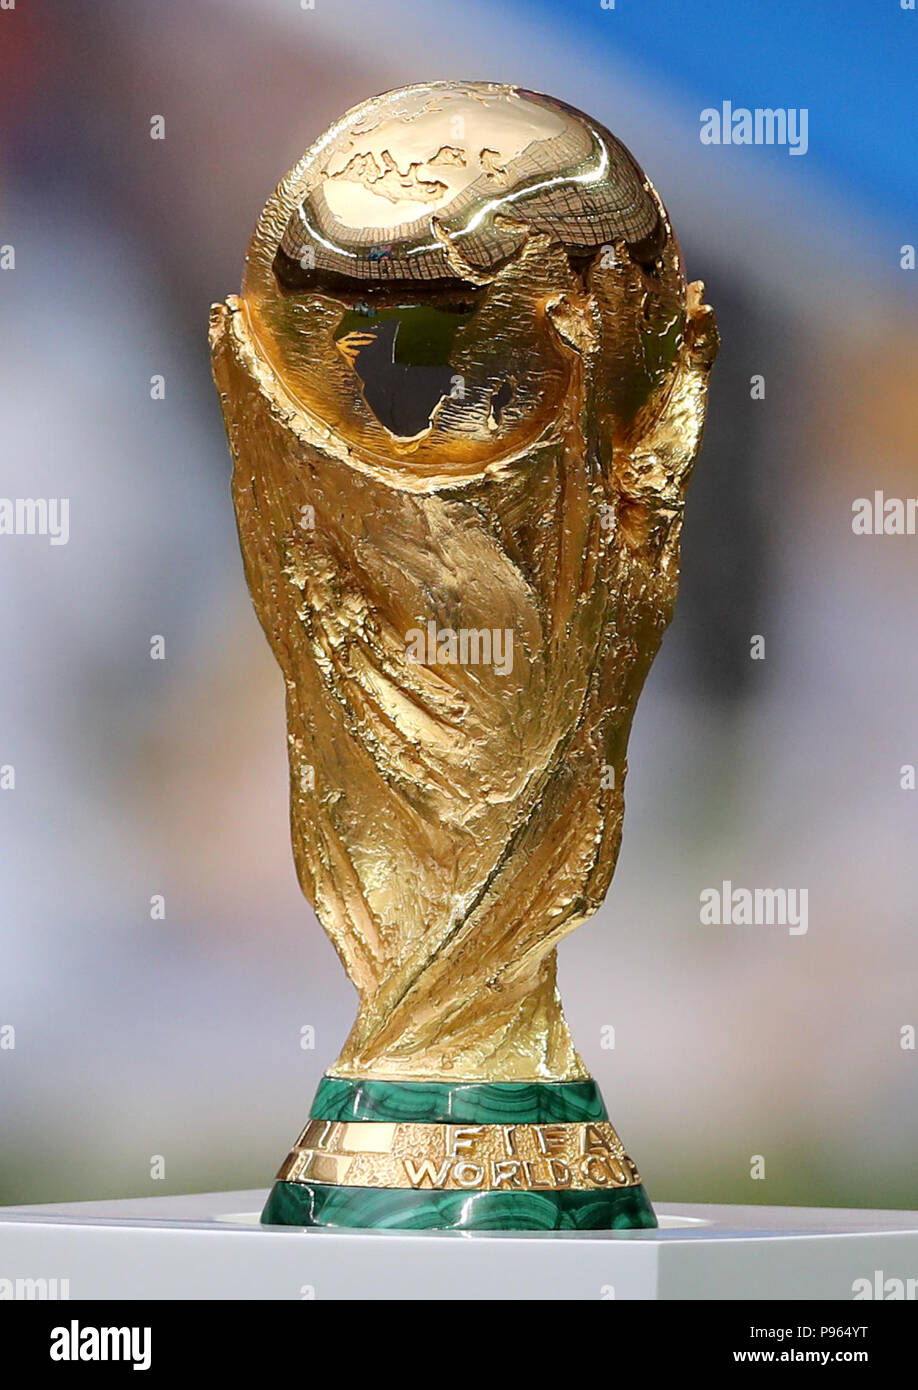 Une vue générale de la coupe du monde pendant la Coupe du Monde de la finale au stade Luzhniki de Moscou. Banque D'Images